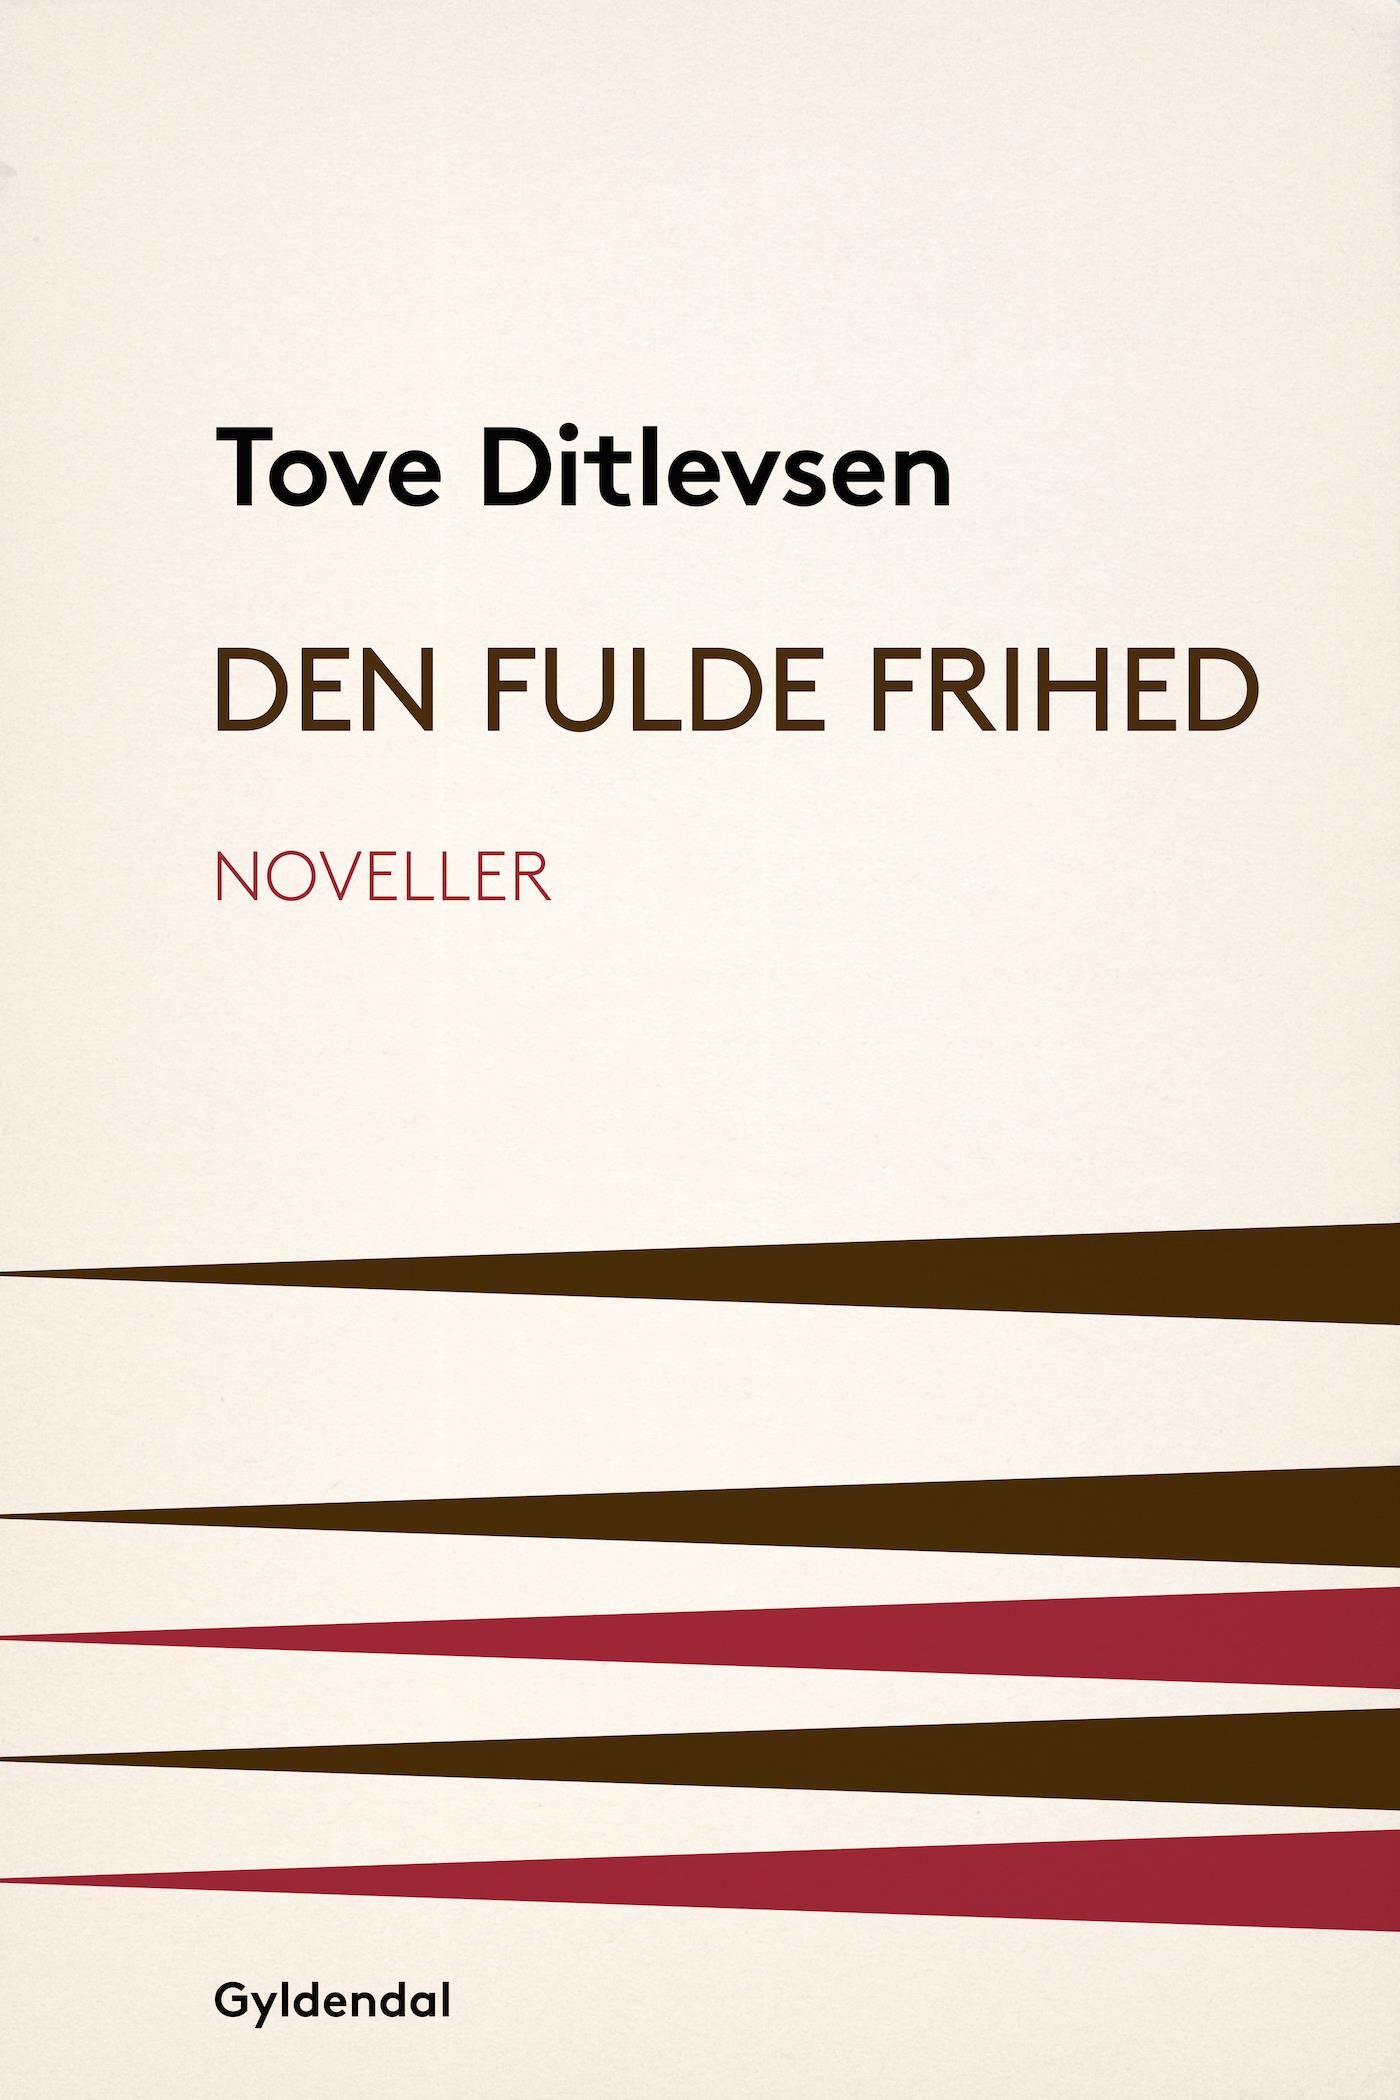 Den fulde frihed, eBook by Tove Ditlevsen